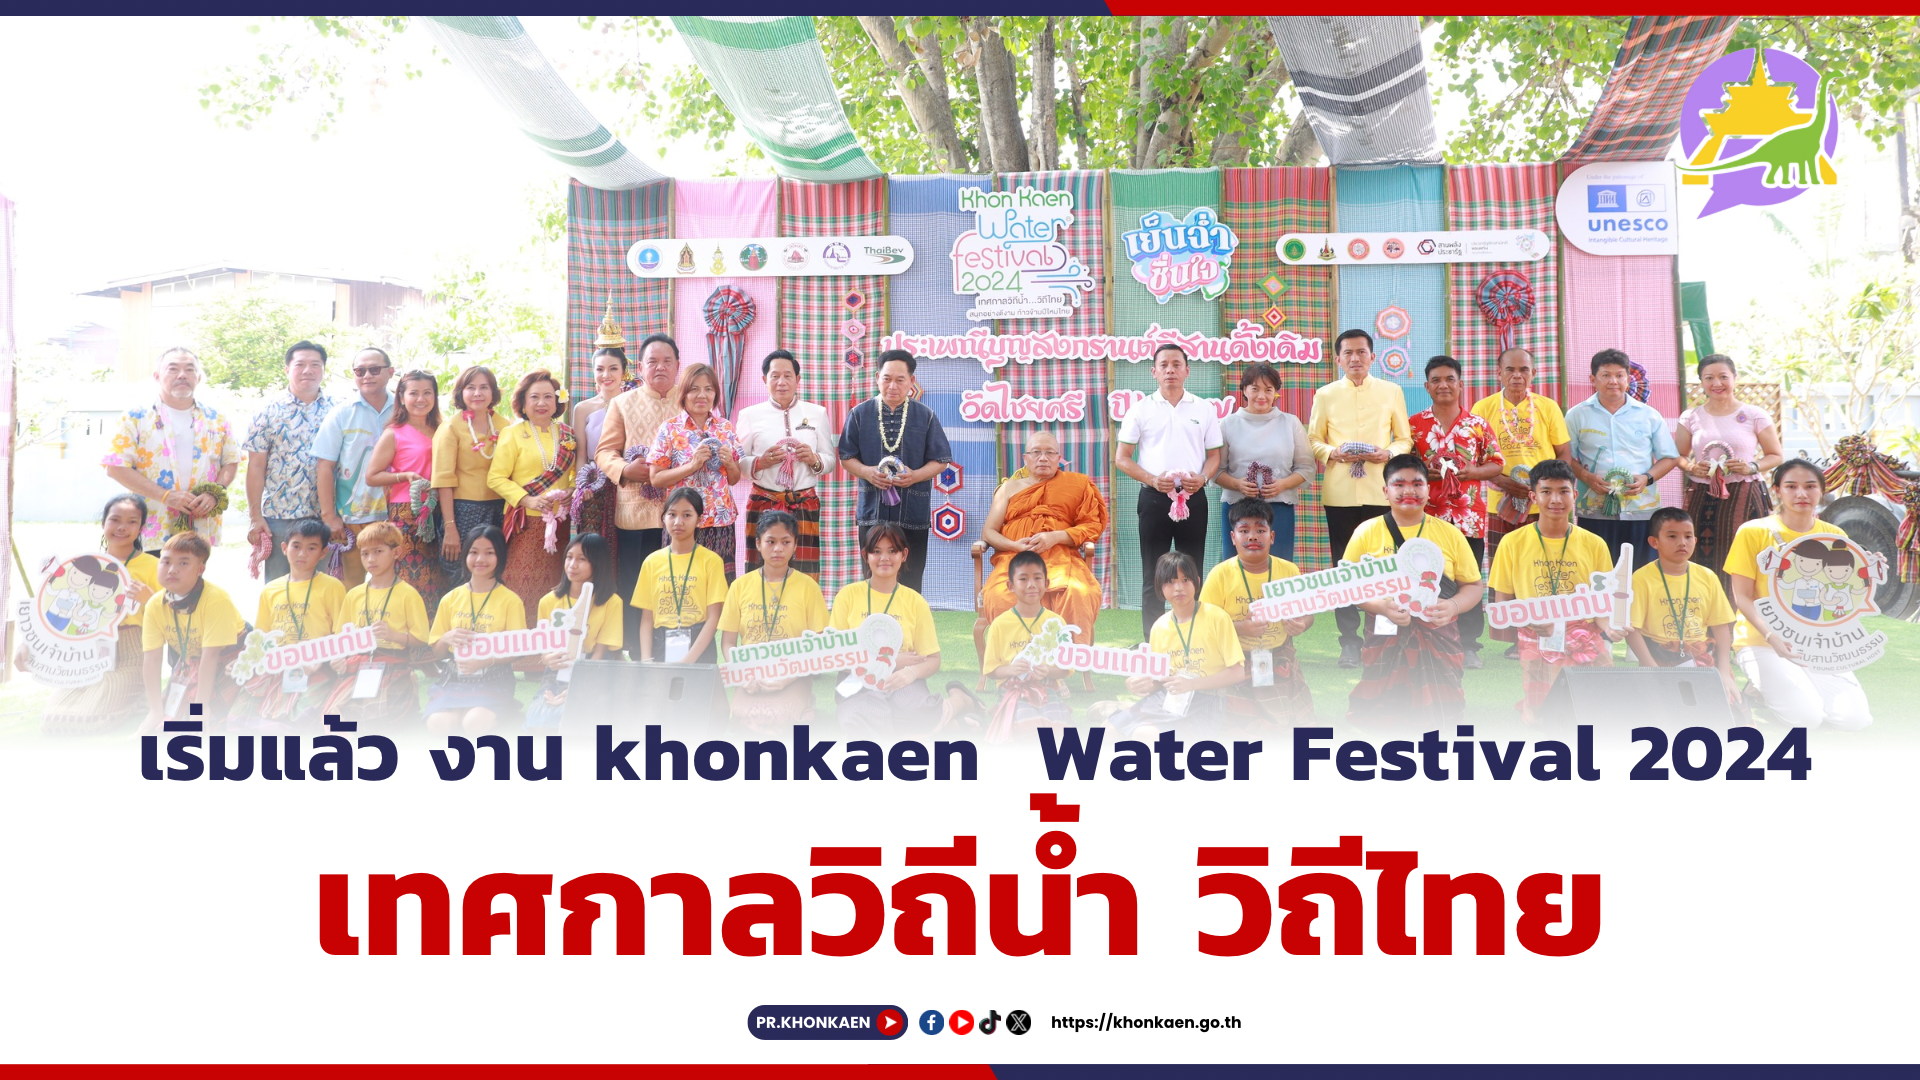 เริ่มแล้ว งาน khonkaen  Water Festival 2024 เทศกาลวิถีน้ำ วิถีไทย ประเพณีบุญสงกรานต์อีสานดั้งเดิมวัดไชยศรี ปร 2567 ระหว่าง 13 -15 เมษายน 